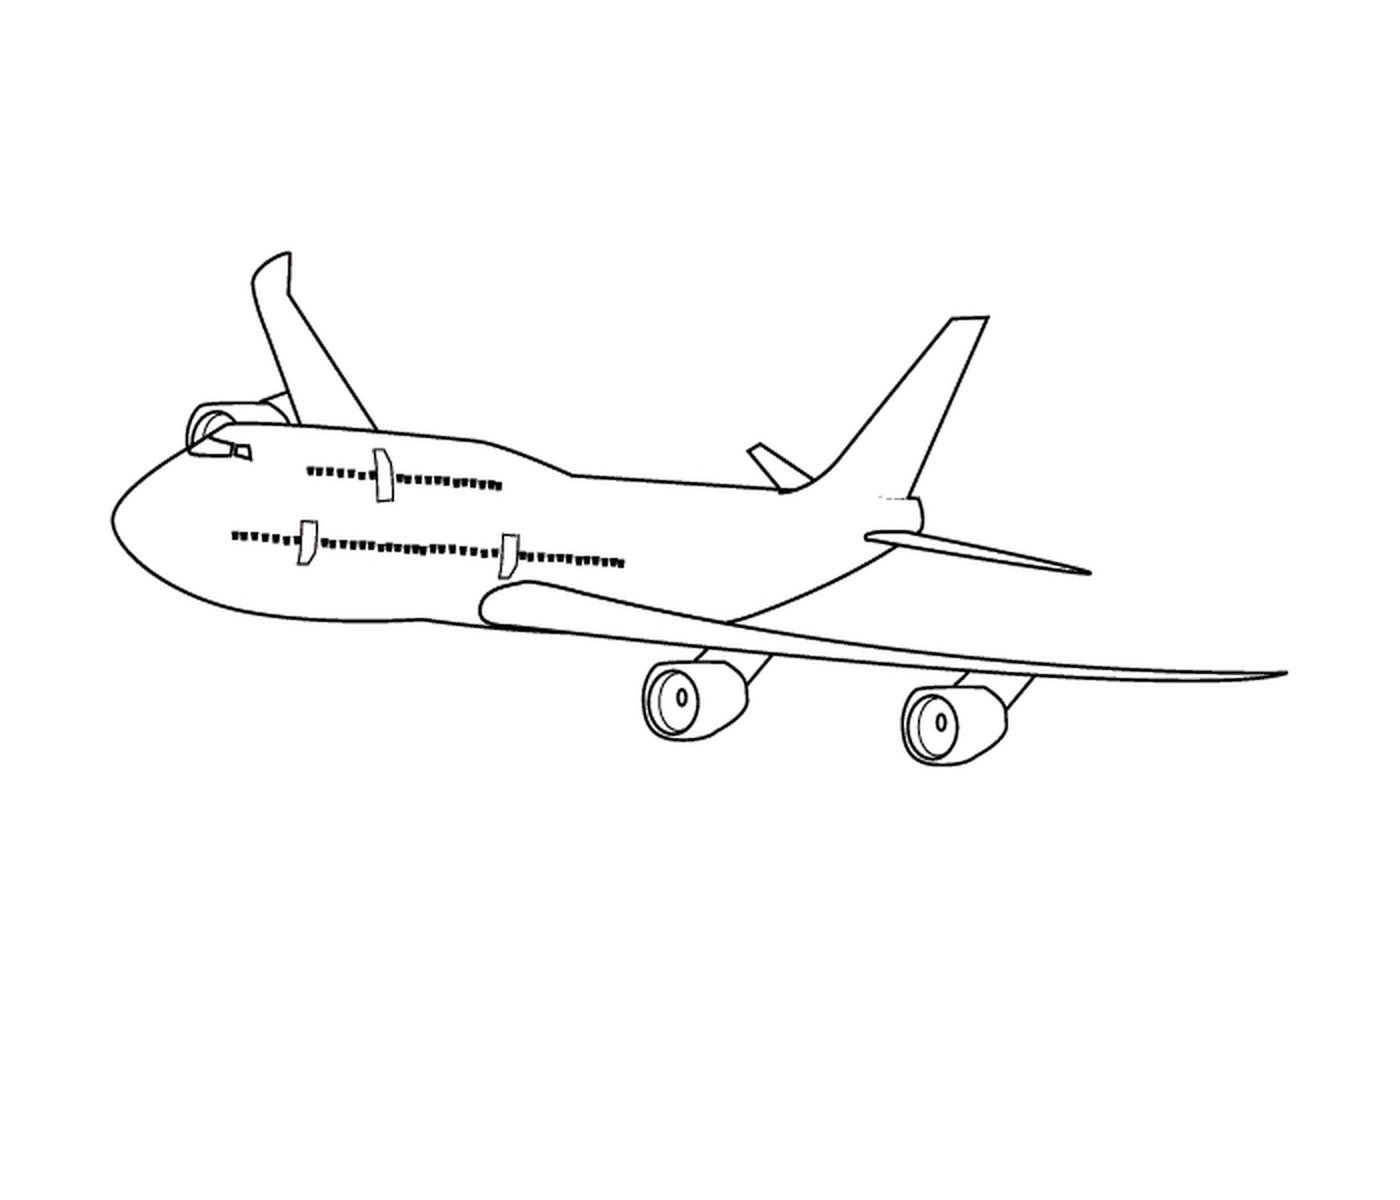  A plane that's drawn 